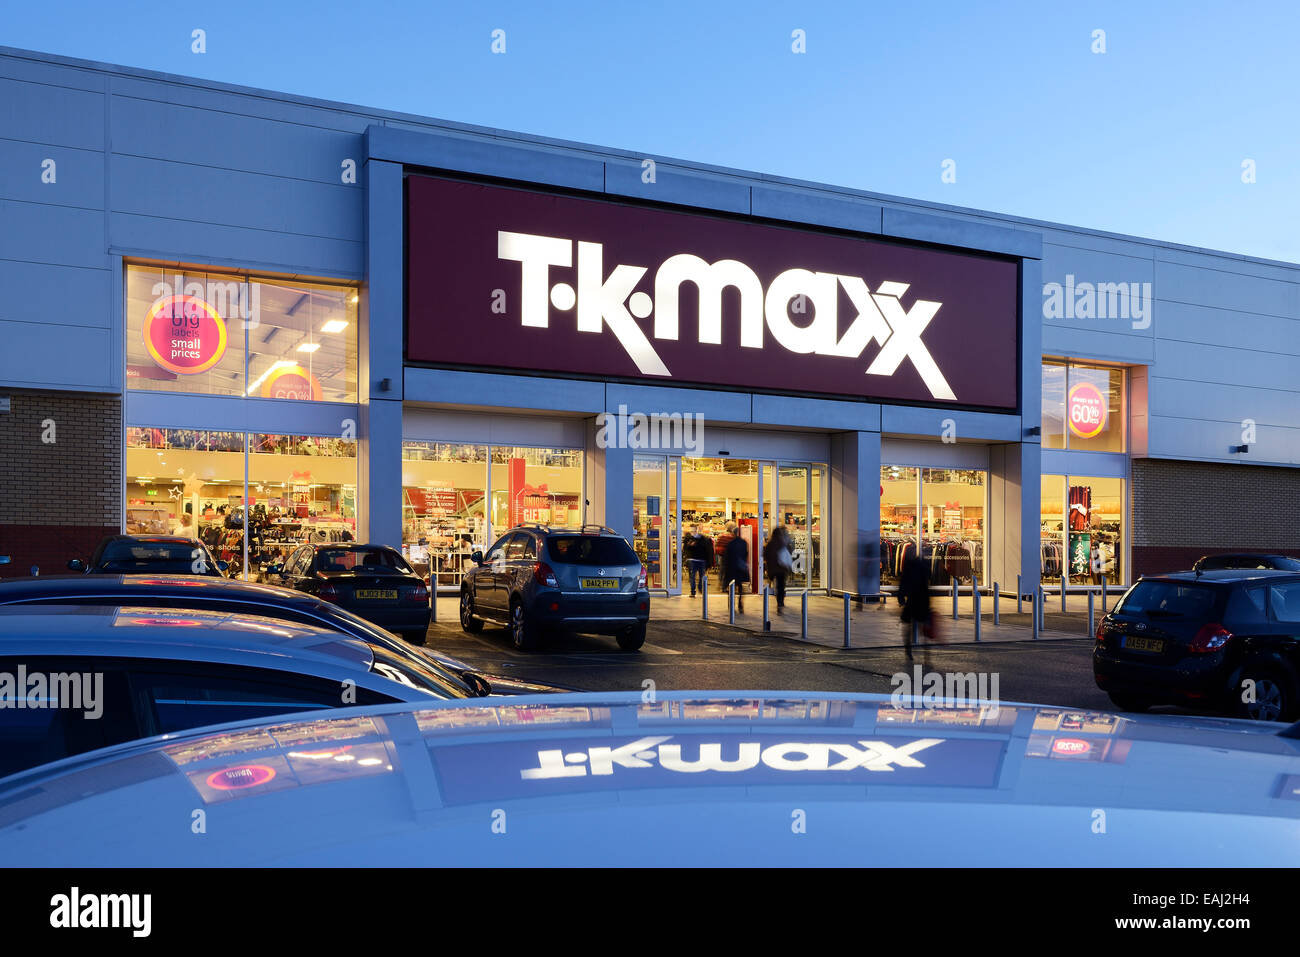 TK Maxx store entrance at night Stock Photo